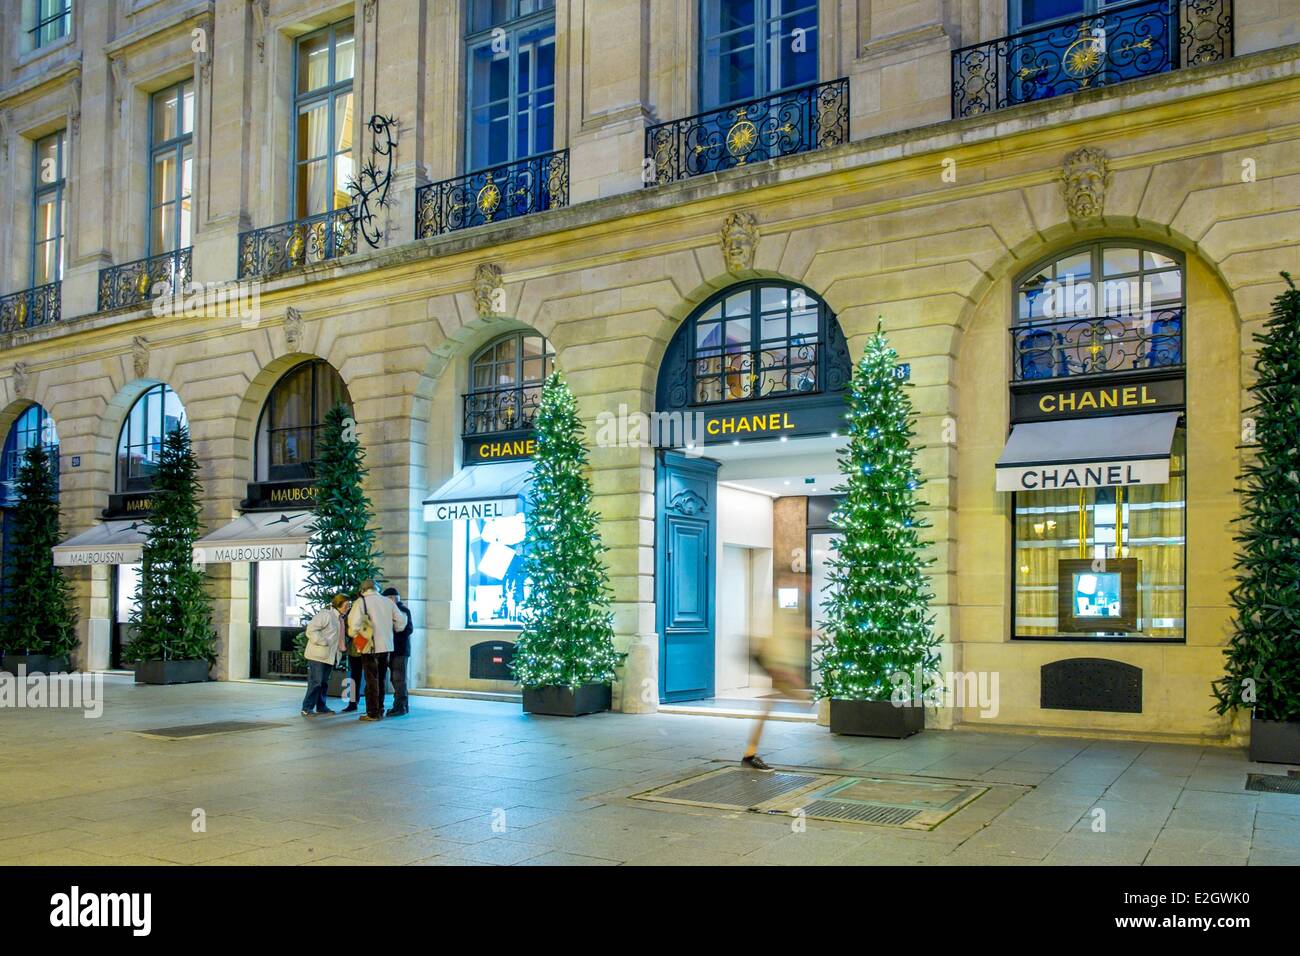 Paris boutique shops hi-res stock photography and images - Alamy